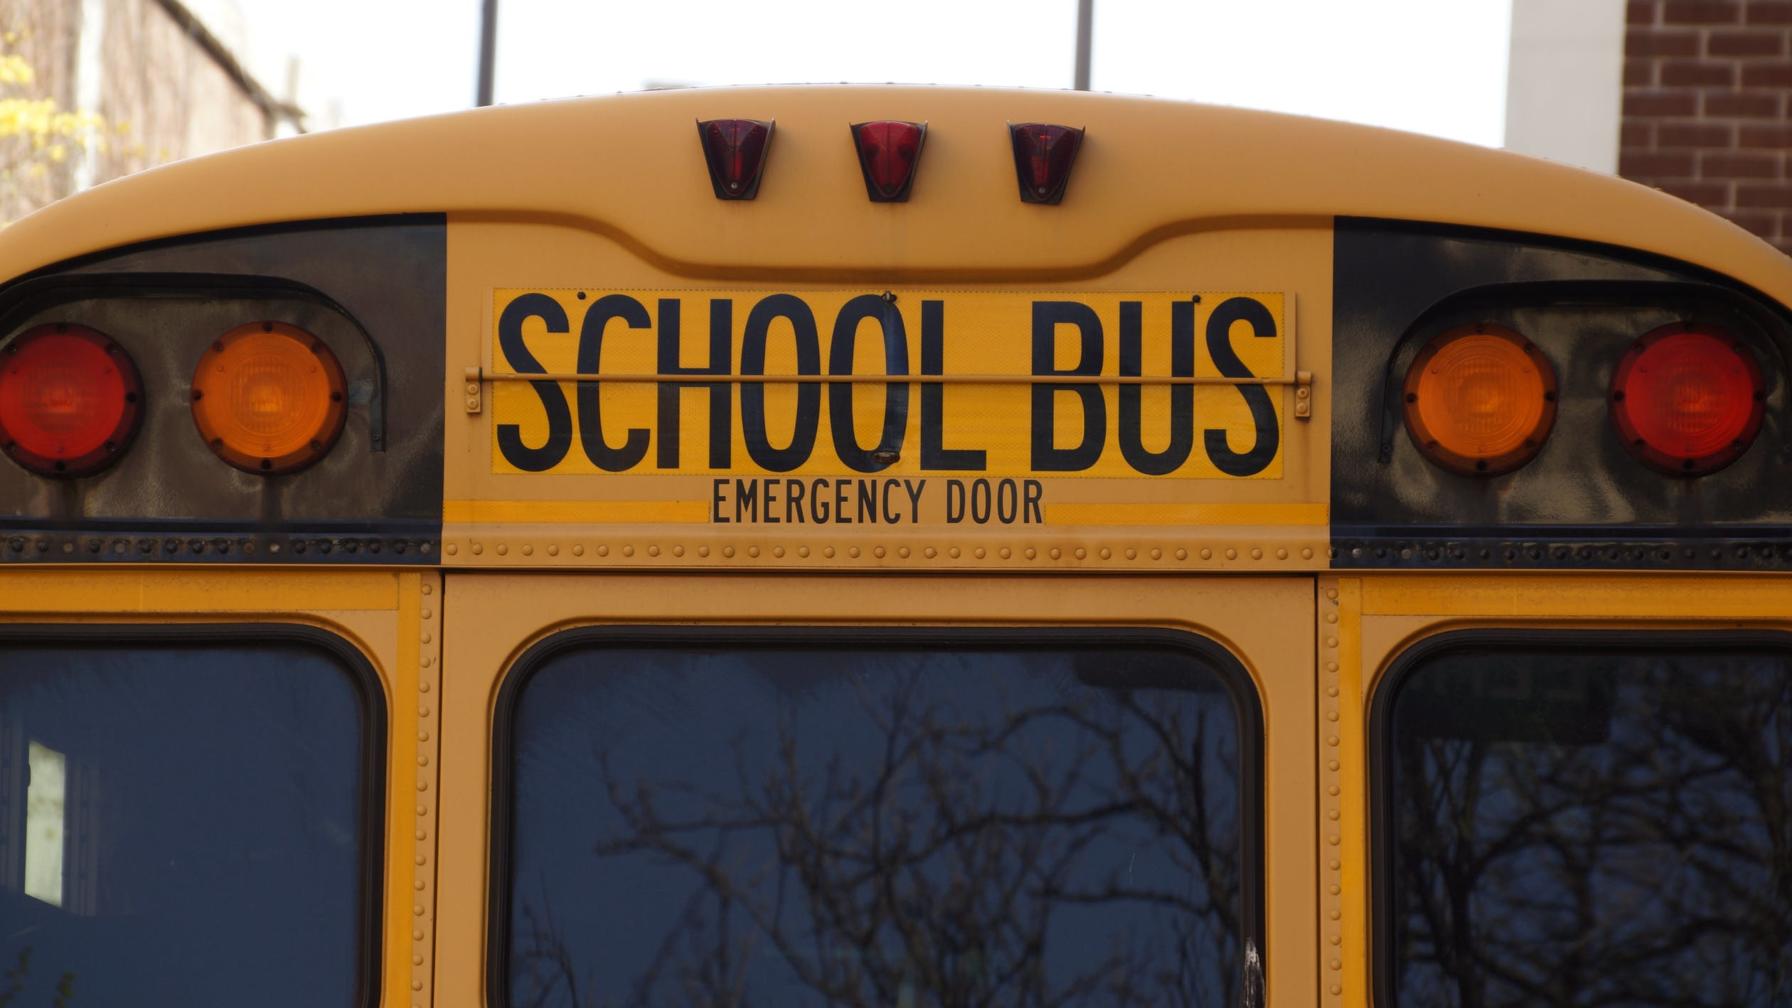 Rear of a school bus emergency door exit